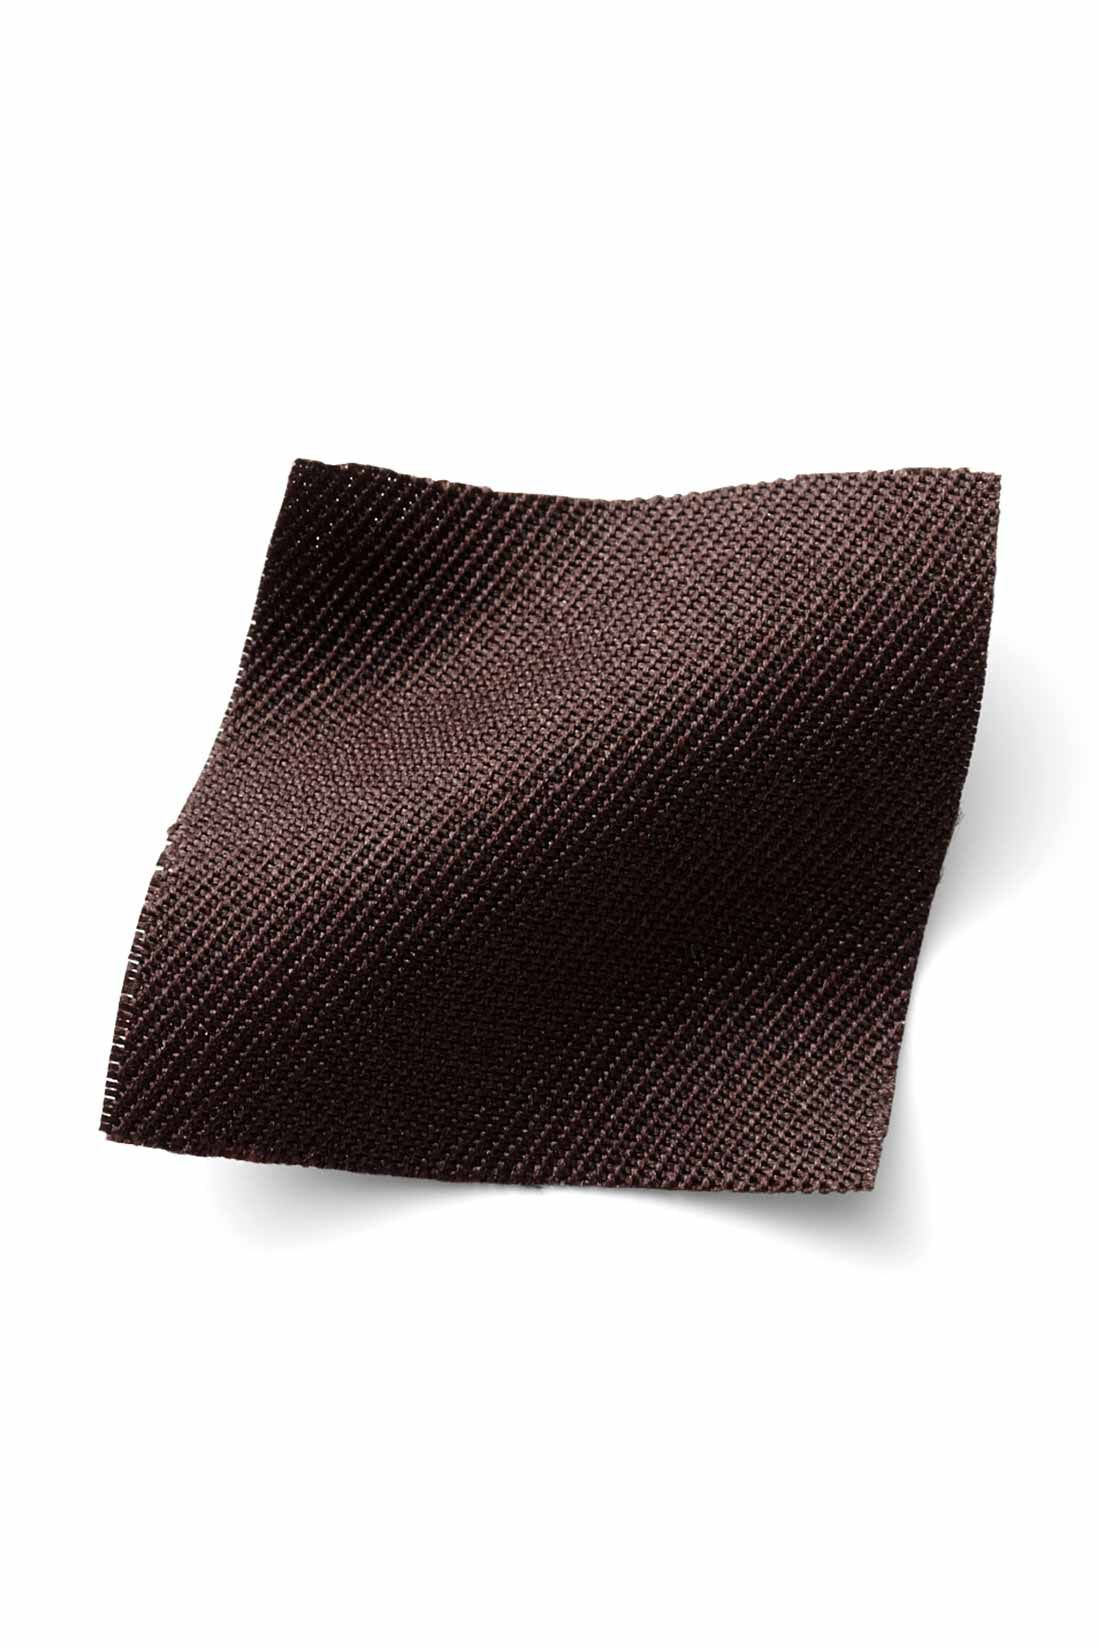 IEDIT[イディット]　着まわし広がる 2-WAY仕様がうれしい大人シルエットのジャンパースカート〈ブラック〉|季節を問わずはきやすい、ほどよい厚みの布はく素材。 ※お届けするカラーとは異なります。